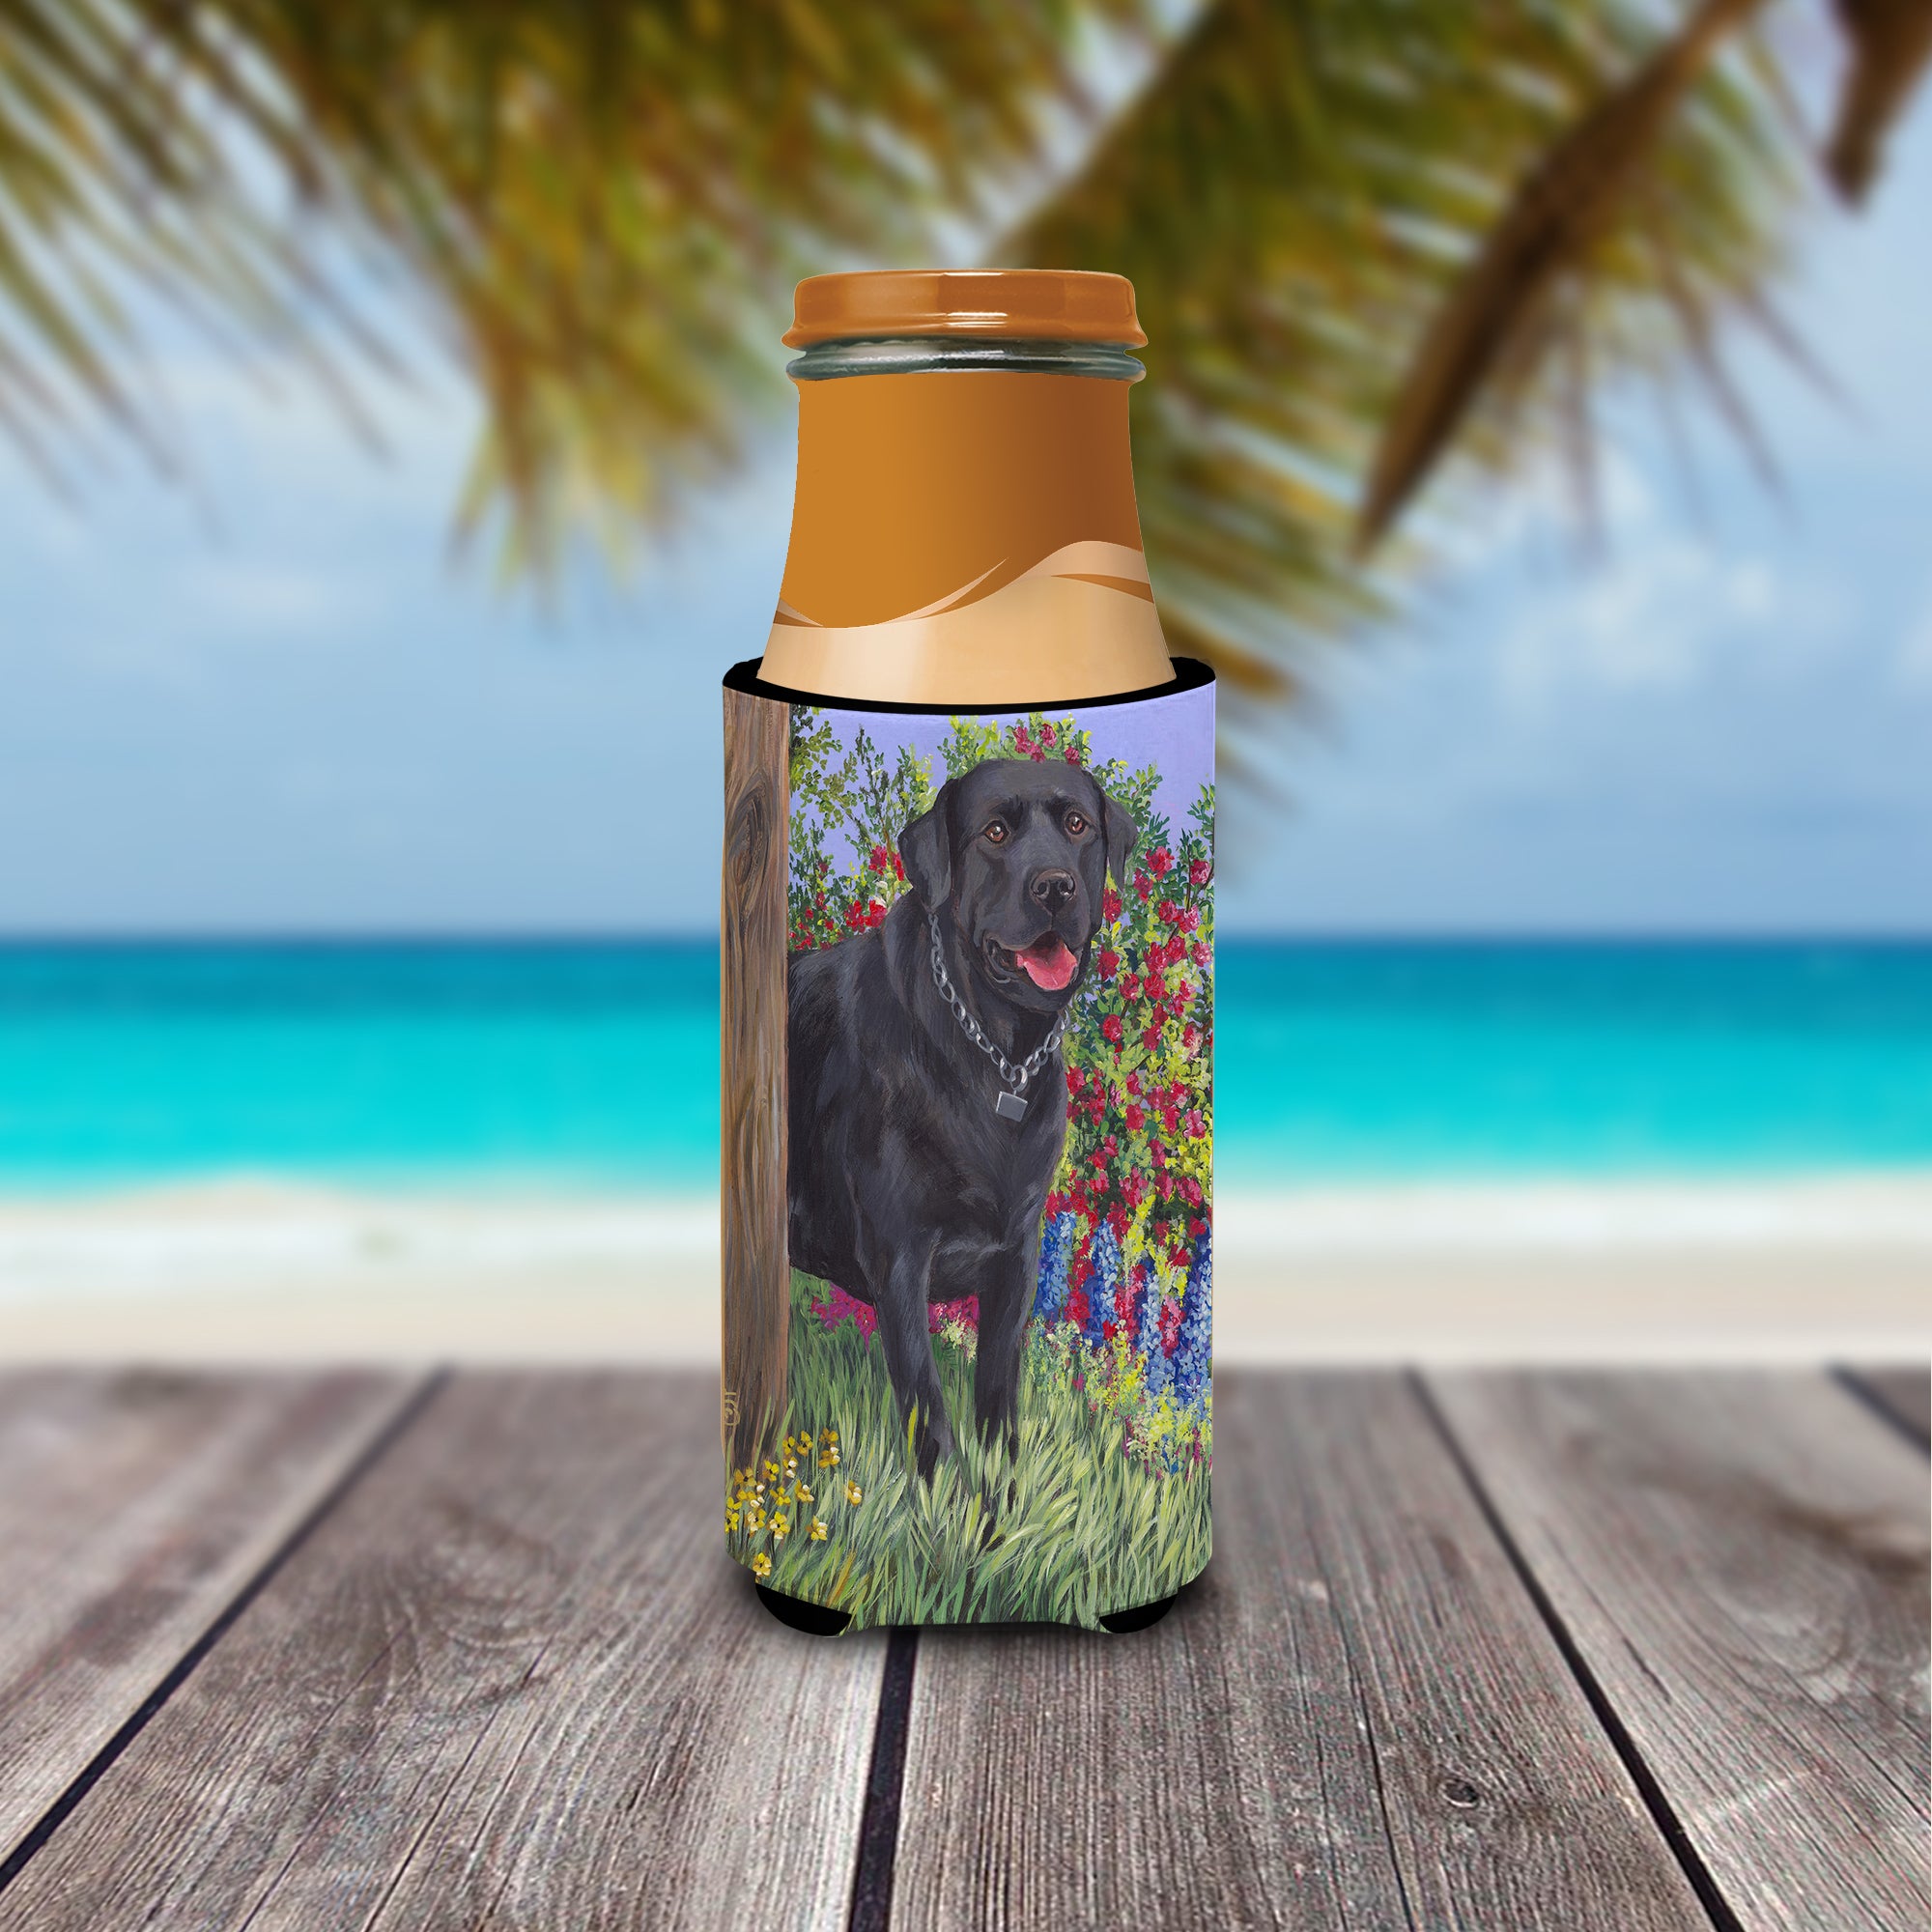 Black Labrador Retriever Ultra Hugger for slim cans PPP3028MUK  the-store.com.